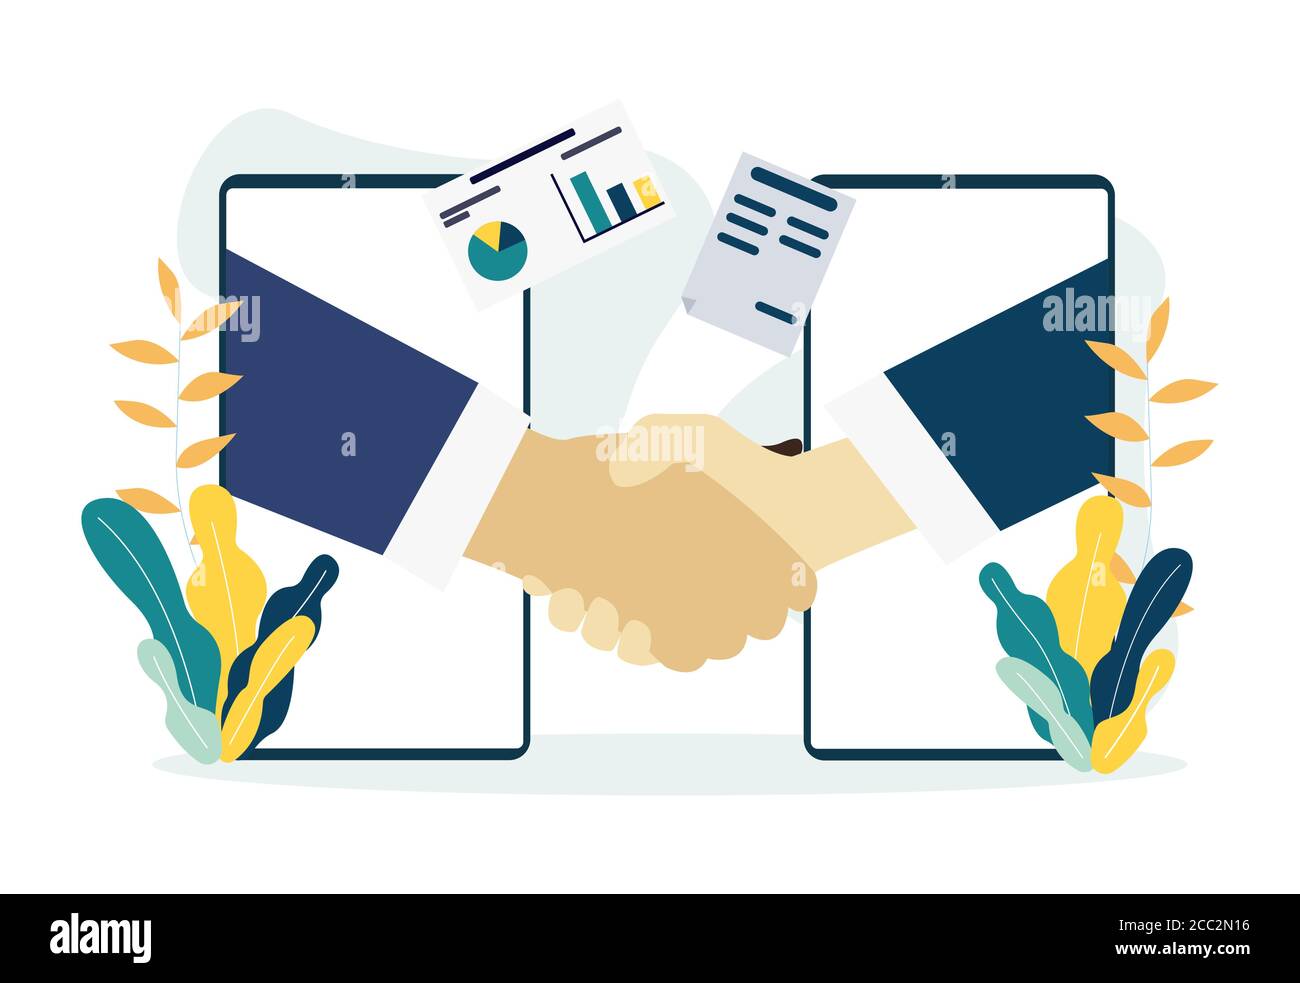 Menschen schütteln die Hände durch Handy-Bildschirme. Handshake, Partnerschaft oder Business Success Agreement Illustration Stock Vektor